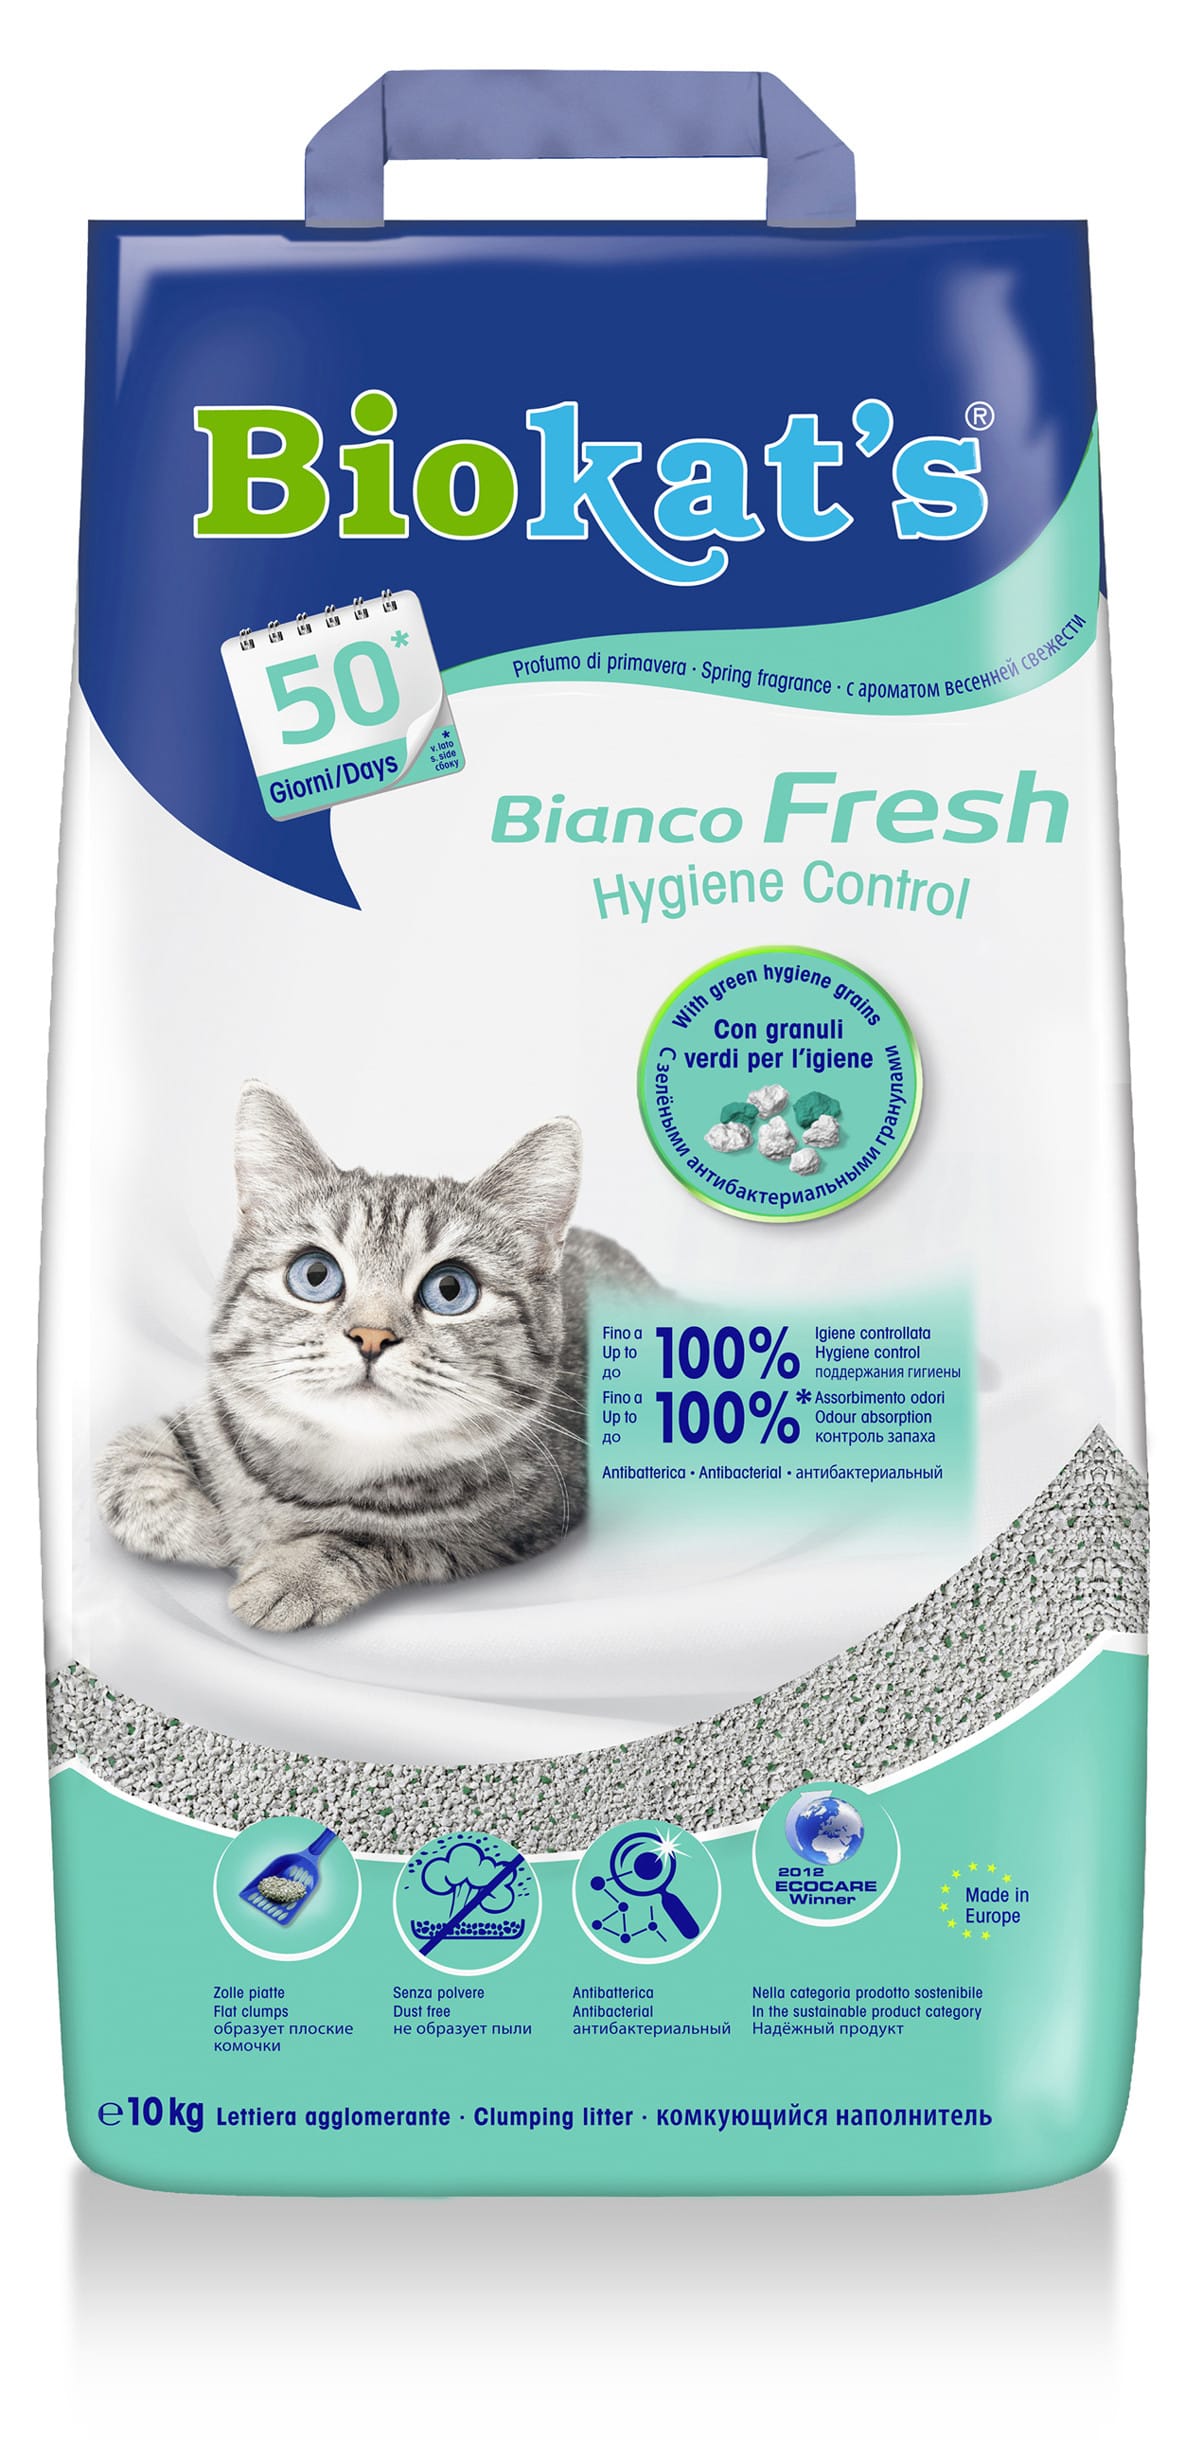 CROCI FRESH BUSTER, Lettiera per gatti anti-odore, Filtri Adesivi per  lettiera per gatti Anti Malodor, Assorbitore di odori naturali, Durata 1  mese : : Prodotti per animali domestici